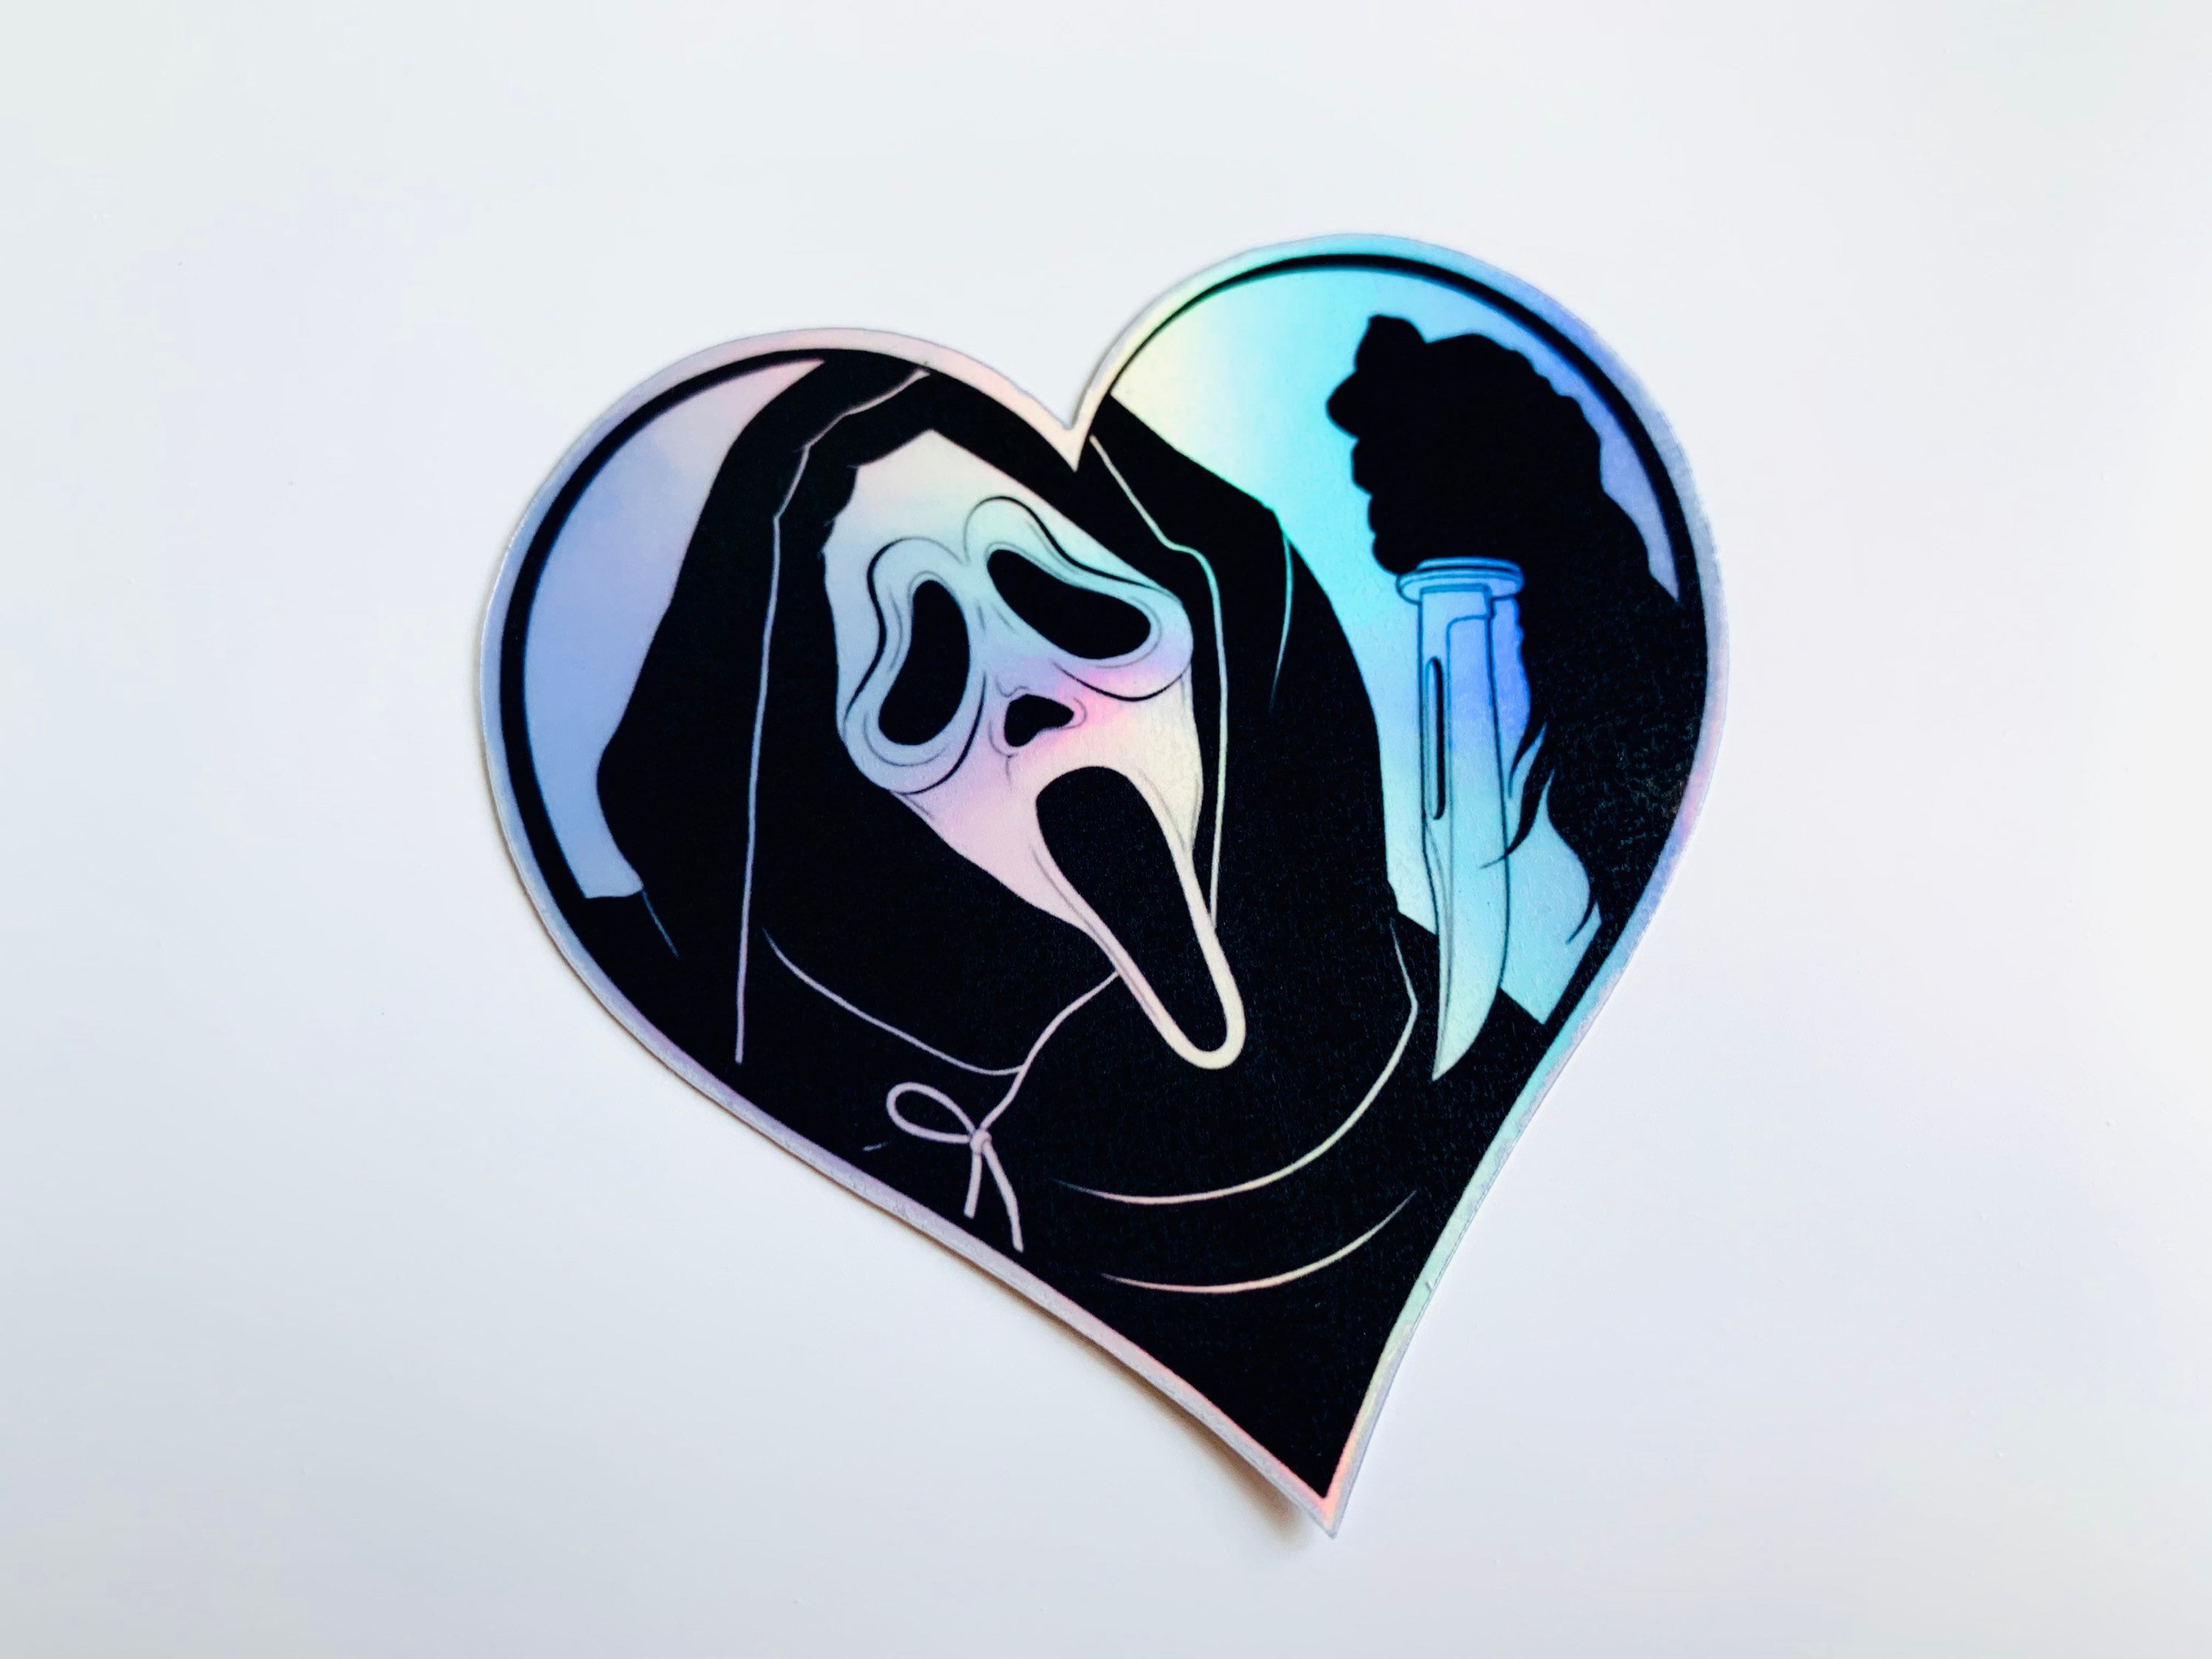 Horror Movie Sticker, Y2k Sticker, Sticker Make Scream, Spooky Ghost Sticker,  Halloween Sticker, Spooky Basket for Girlfriend, Scary Face 